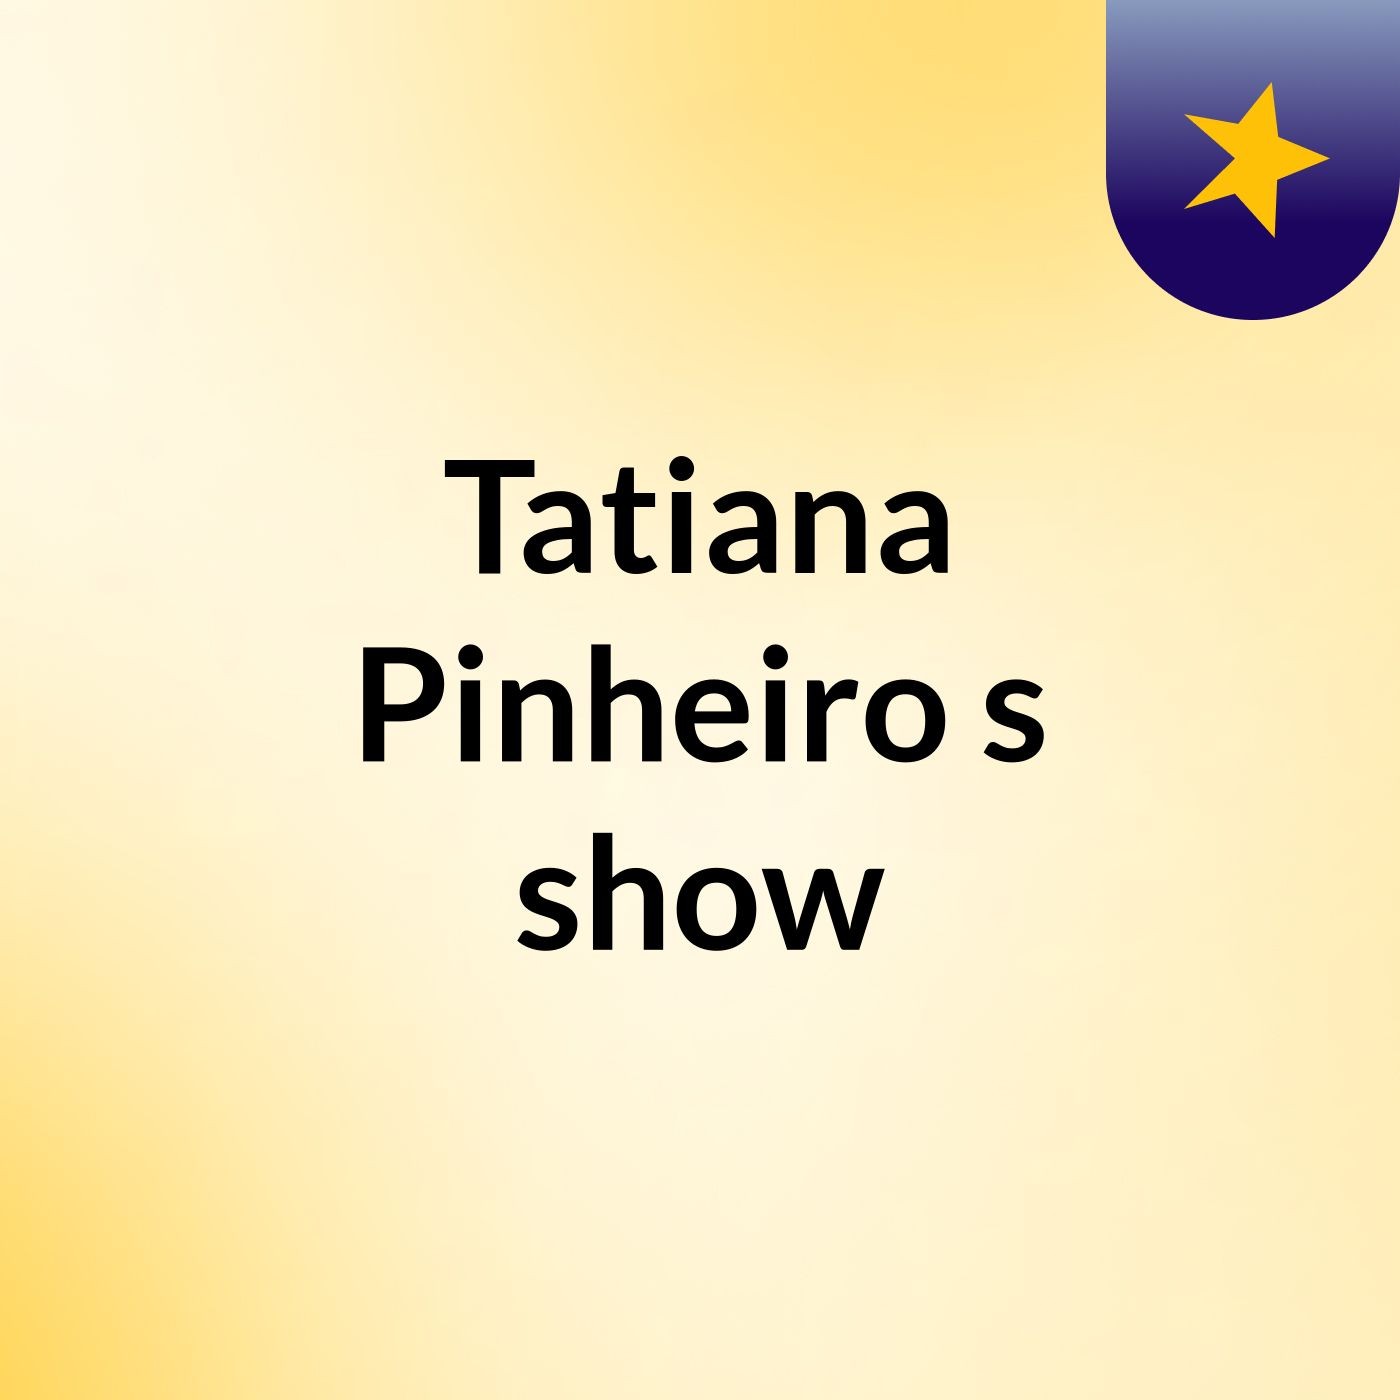 Tatiana Pinheiro's show